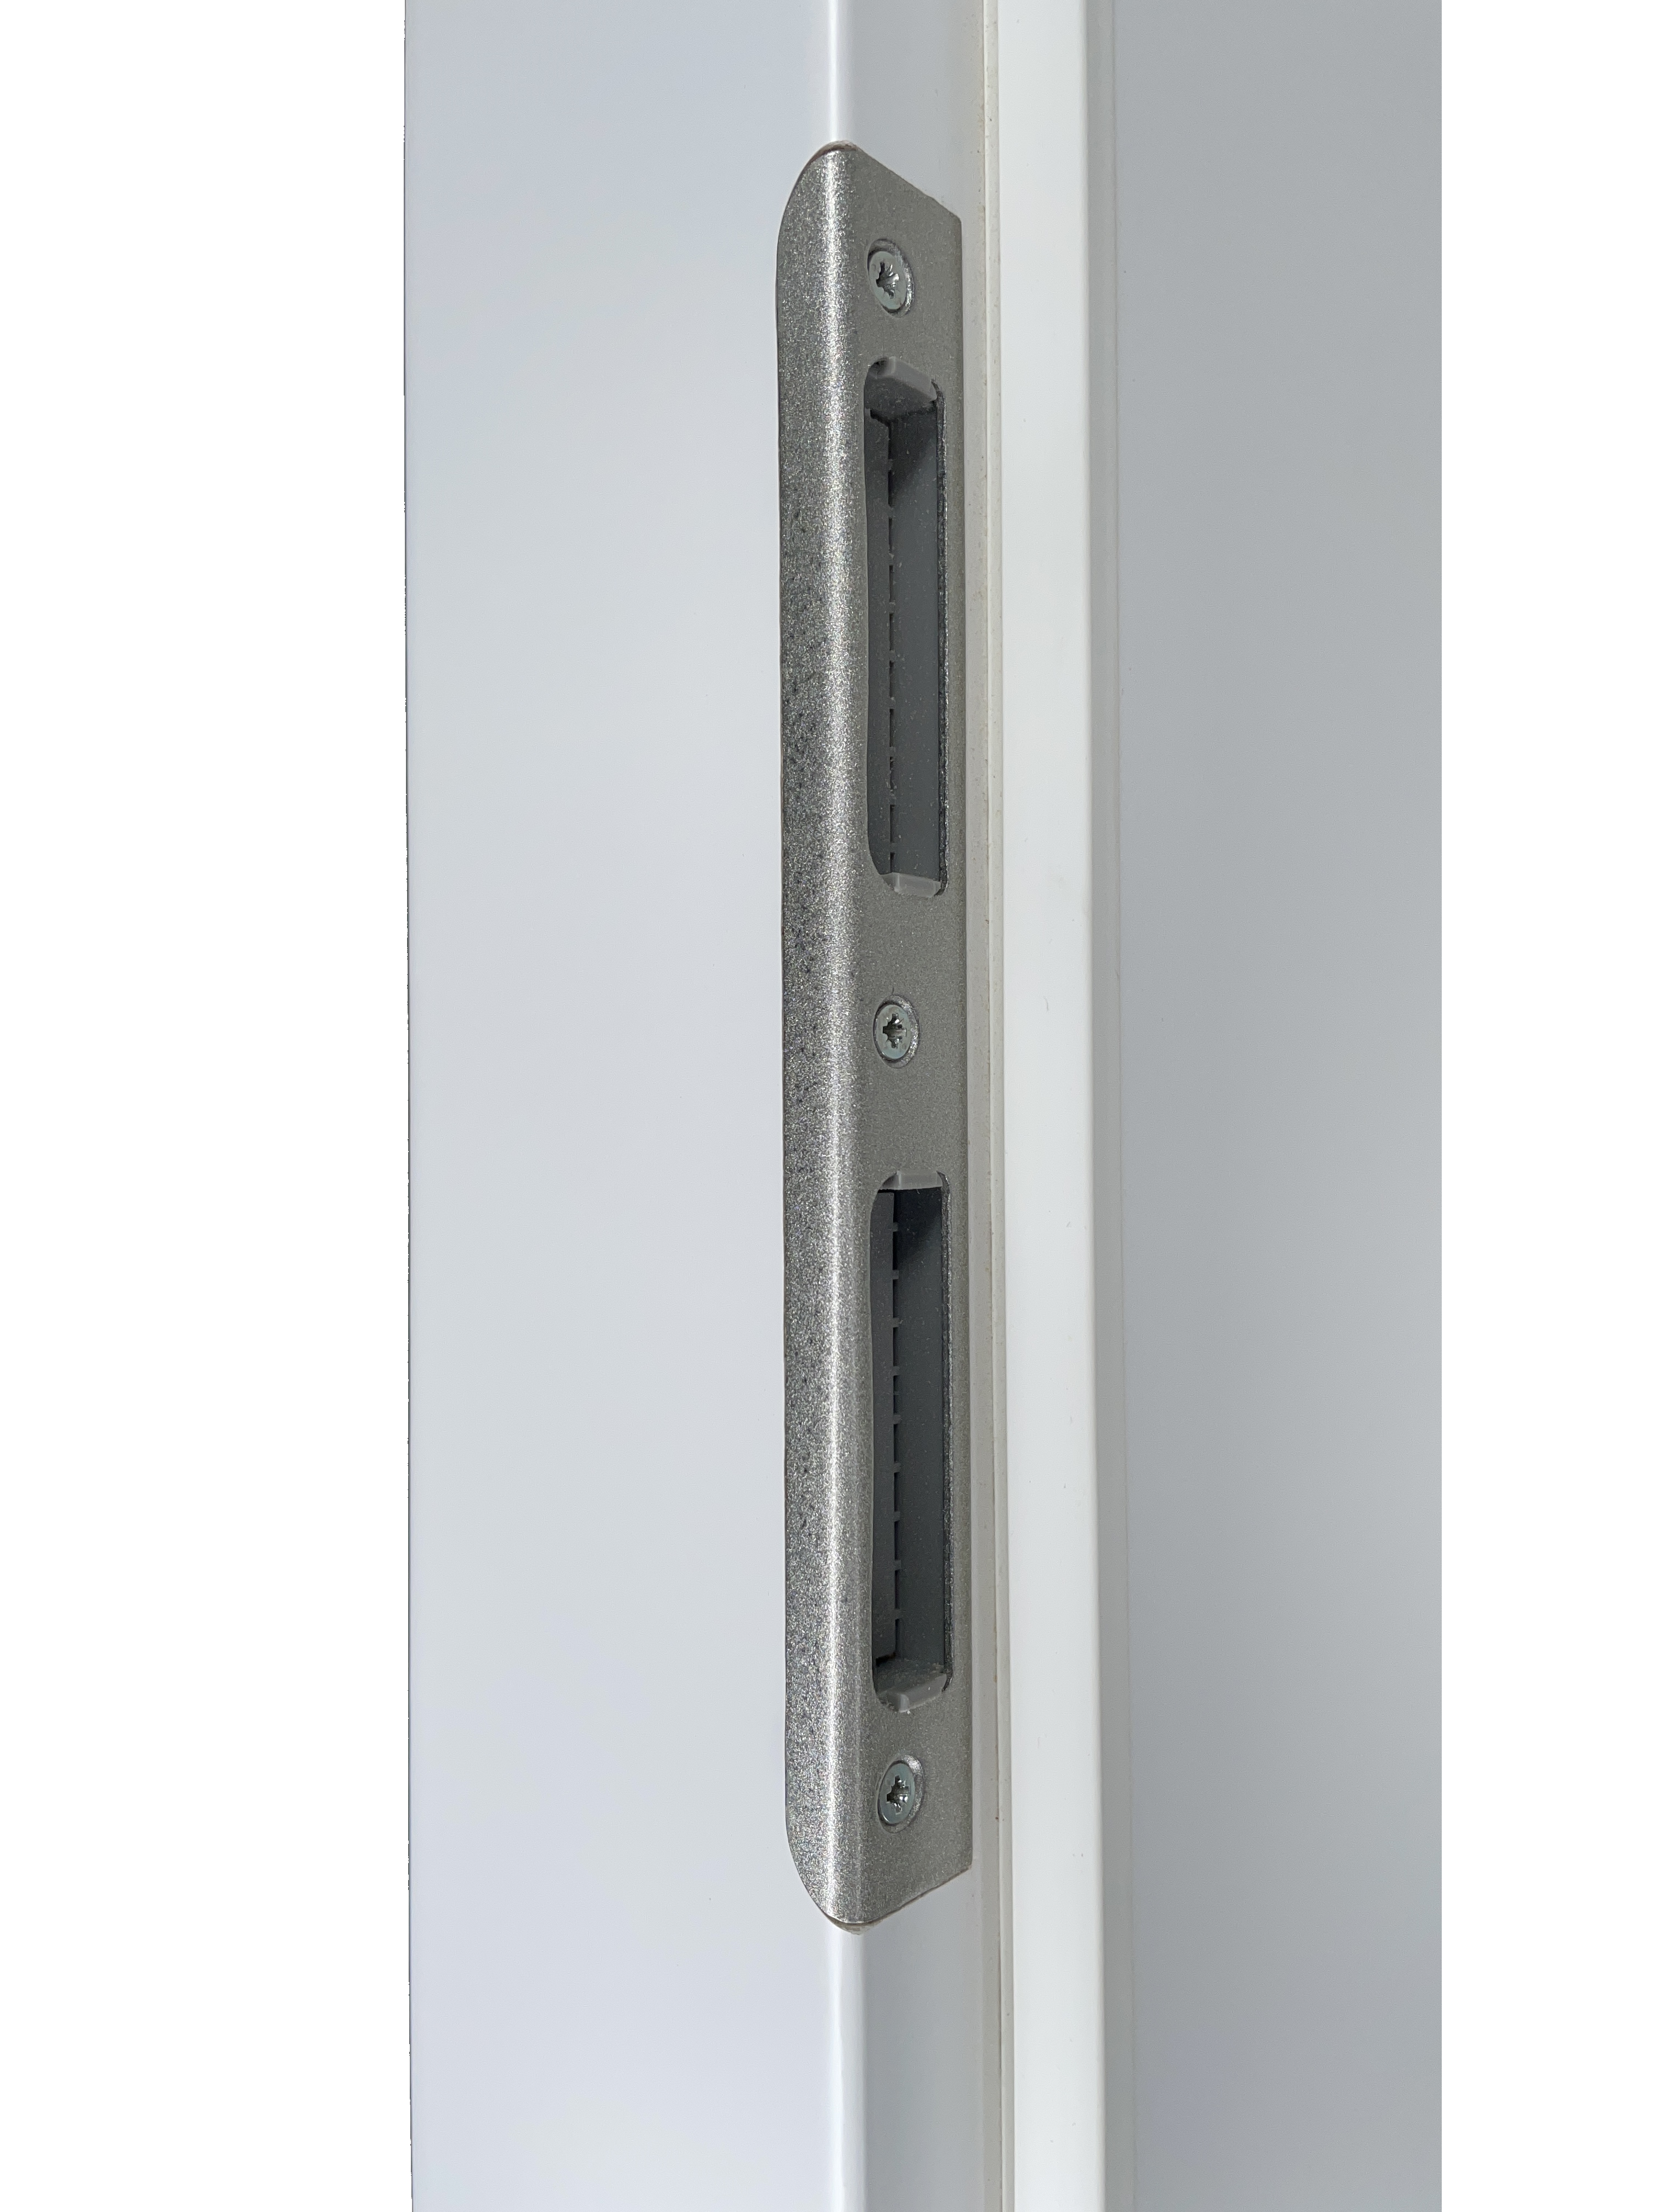 Zimmertür mit Zarge und Lichtausschnitt brillant-weiß 3 Kassetten Designkante - Modell Stiltür M33LA1